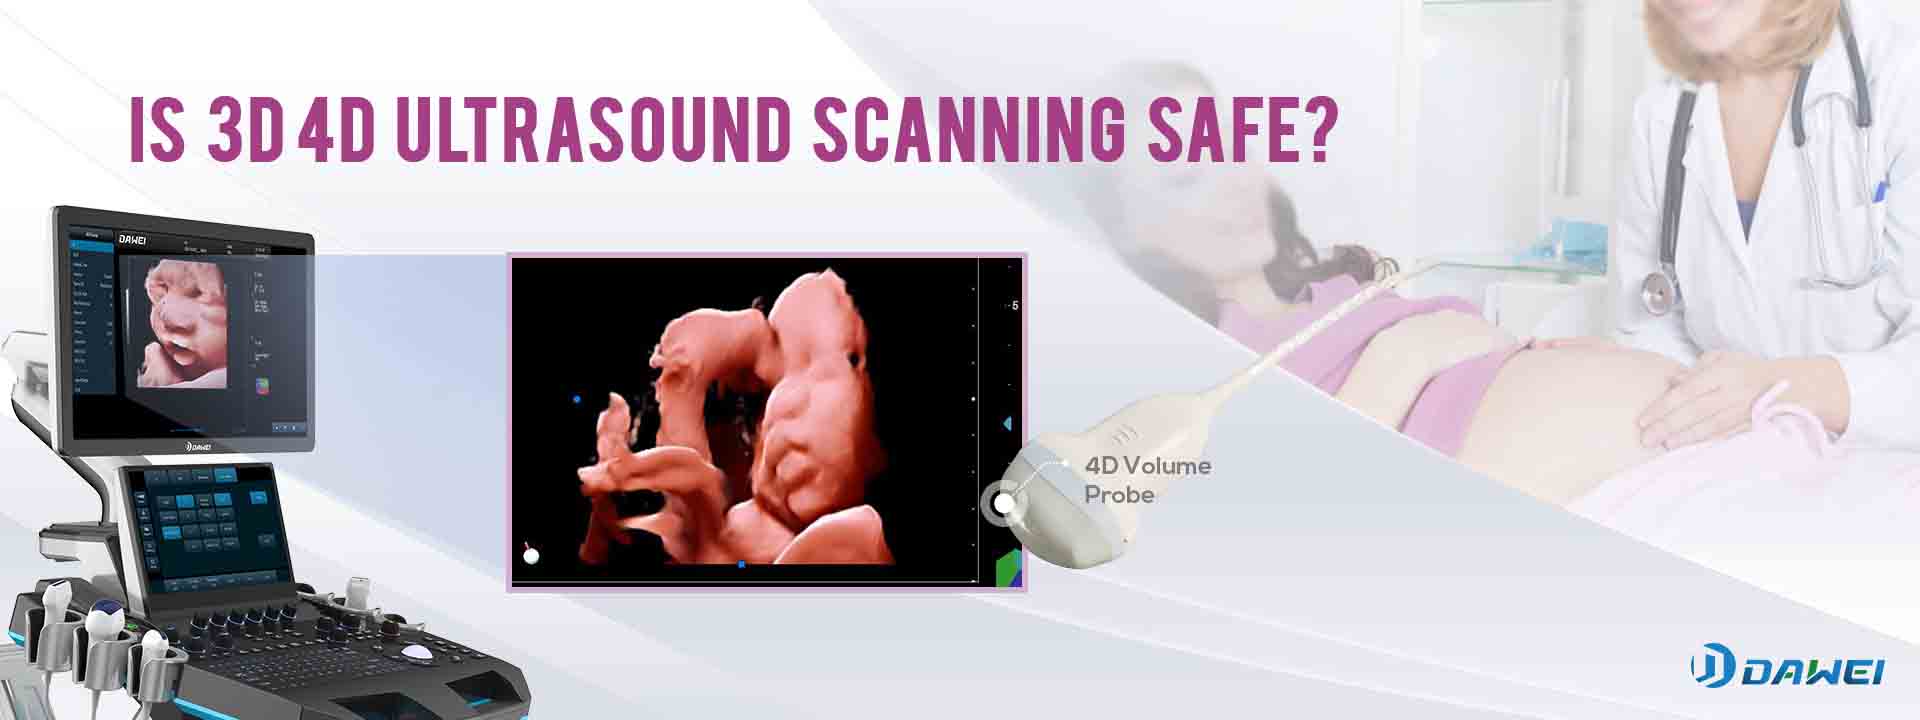 Este scanarea cu ultrasunete 3D4D sigură în Obstetrică și Ginecologie?